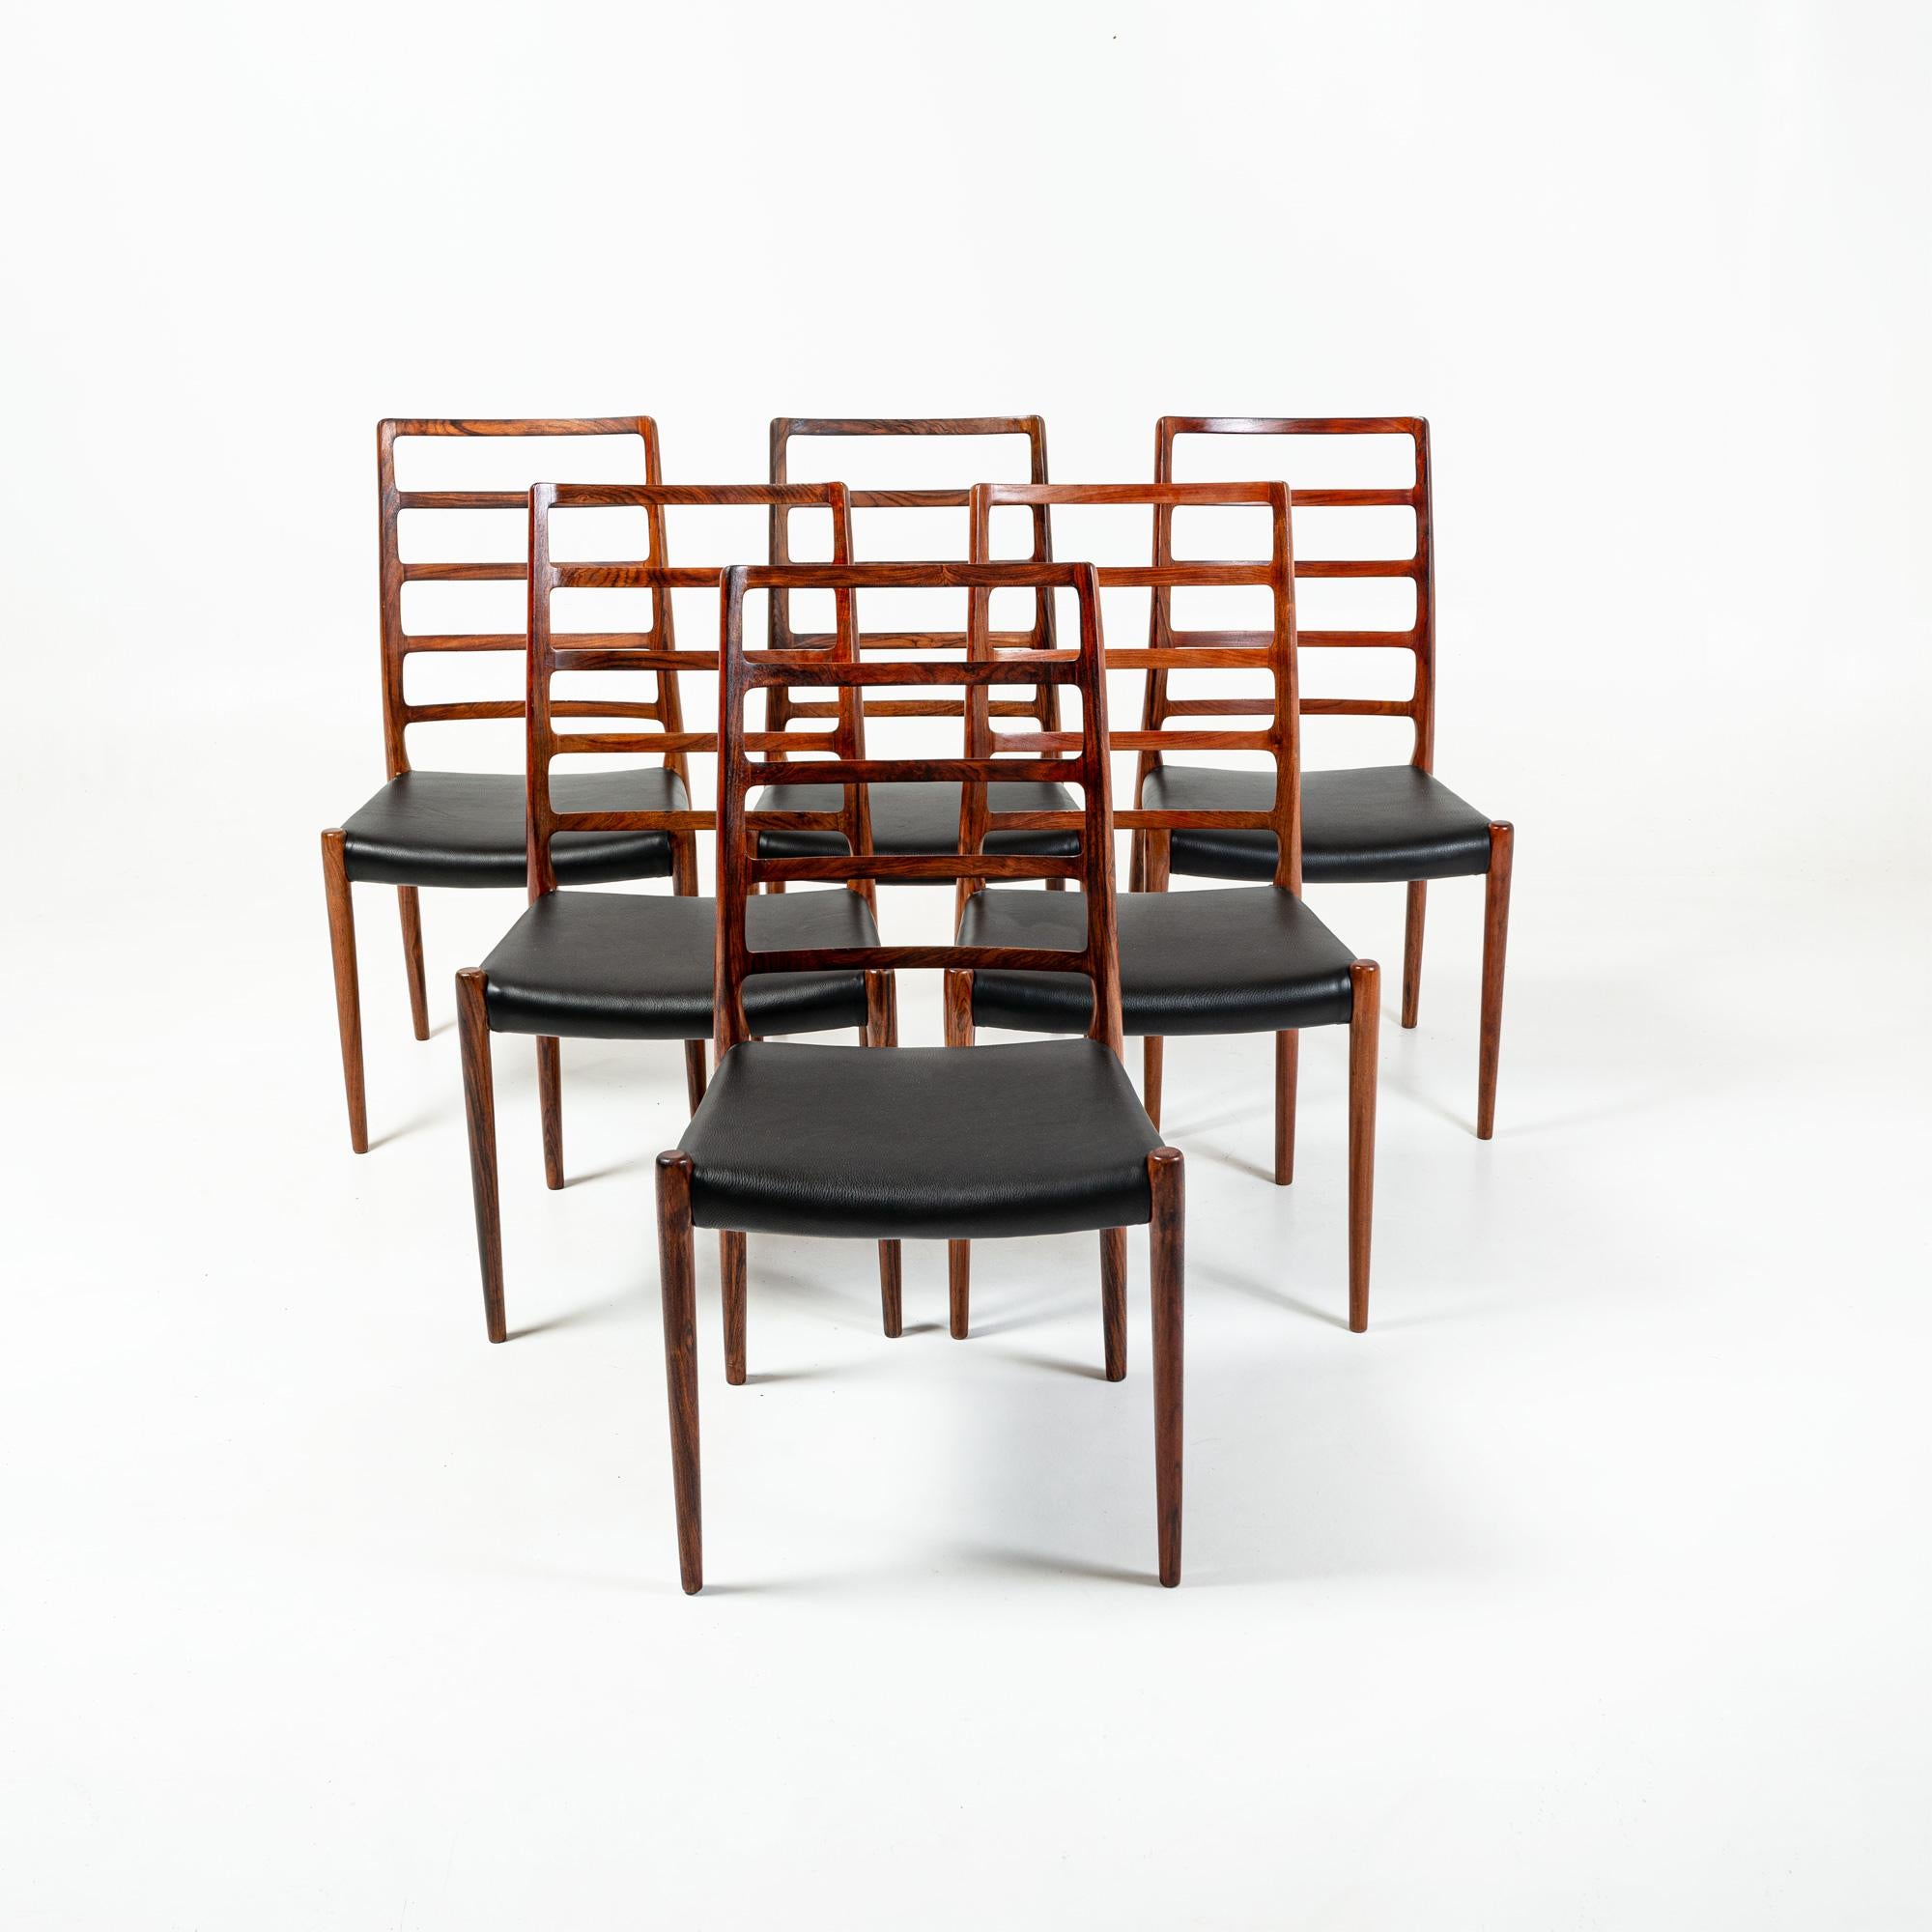 Rare et iconique ensemble de 6 chaises de salle à manger en bois de rose conçues par Niels Otto Moller pour JL Møller Møbelfabrik en 1954. L'ensemble a été entièrement restauré, avec un siège en cuir noir entièrement neuf.